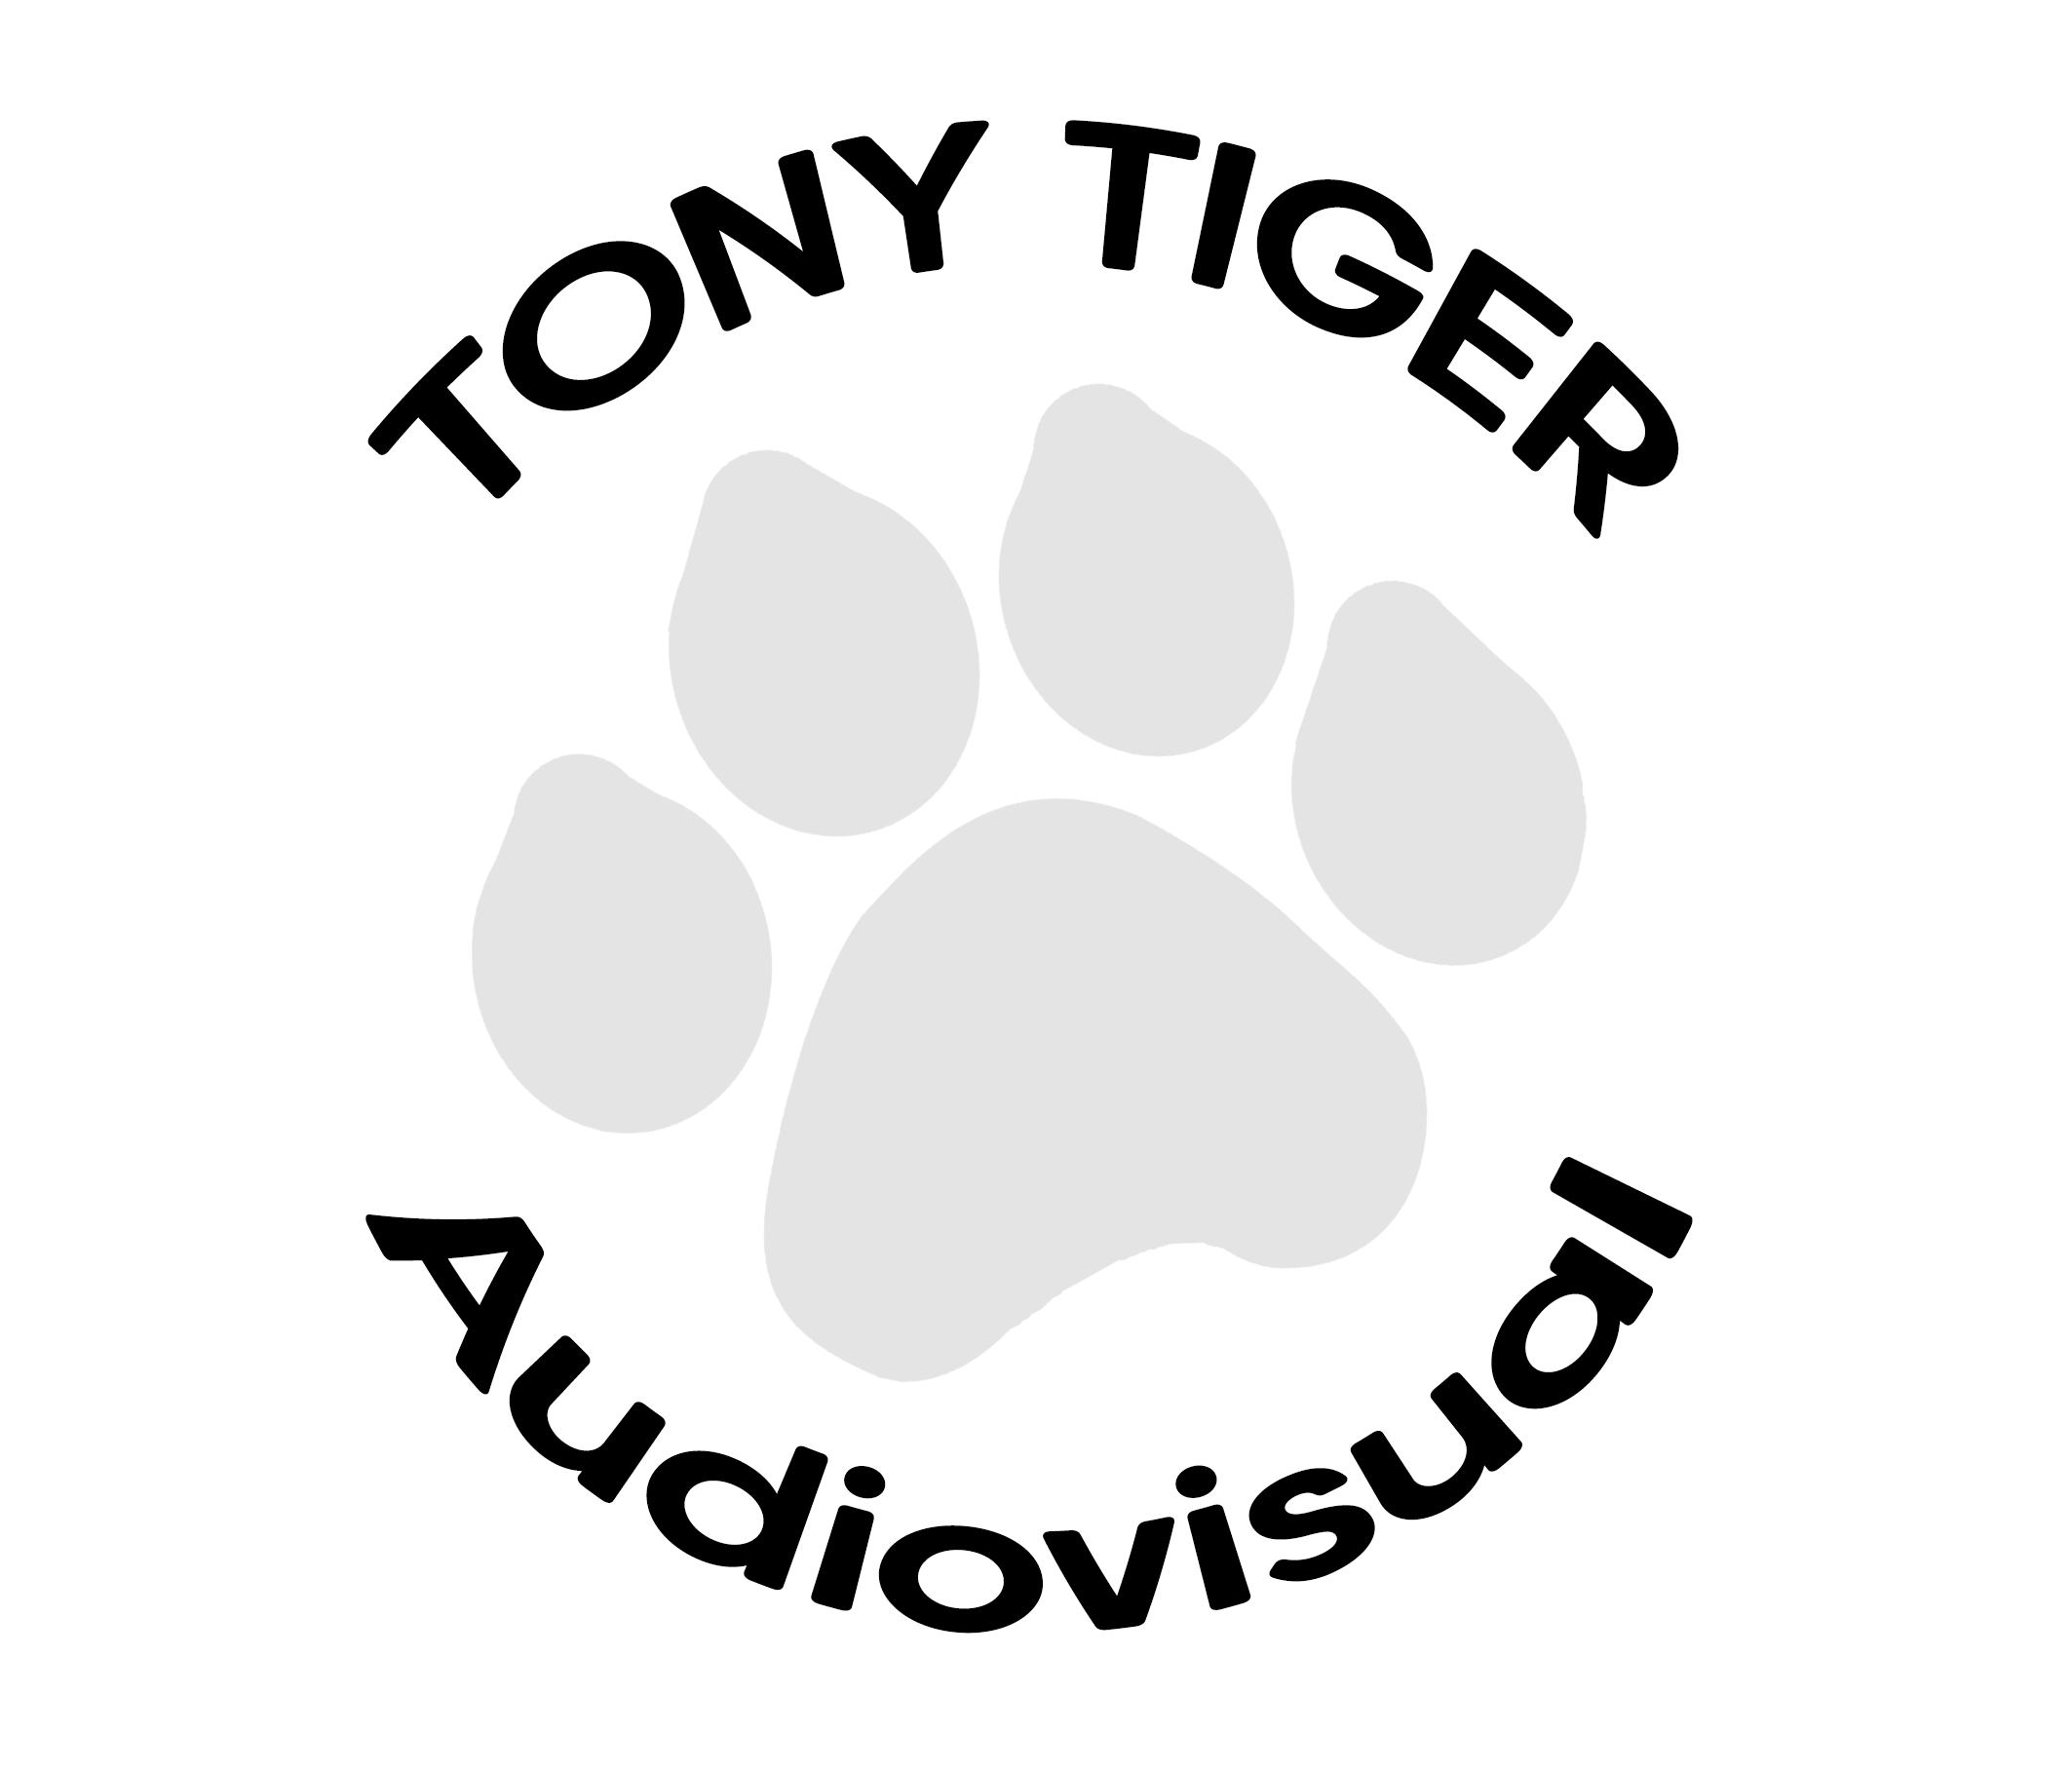 Tony Tiger Audiovisual